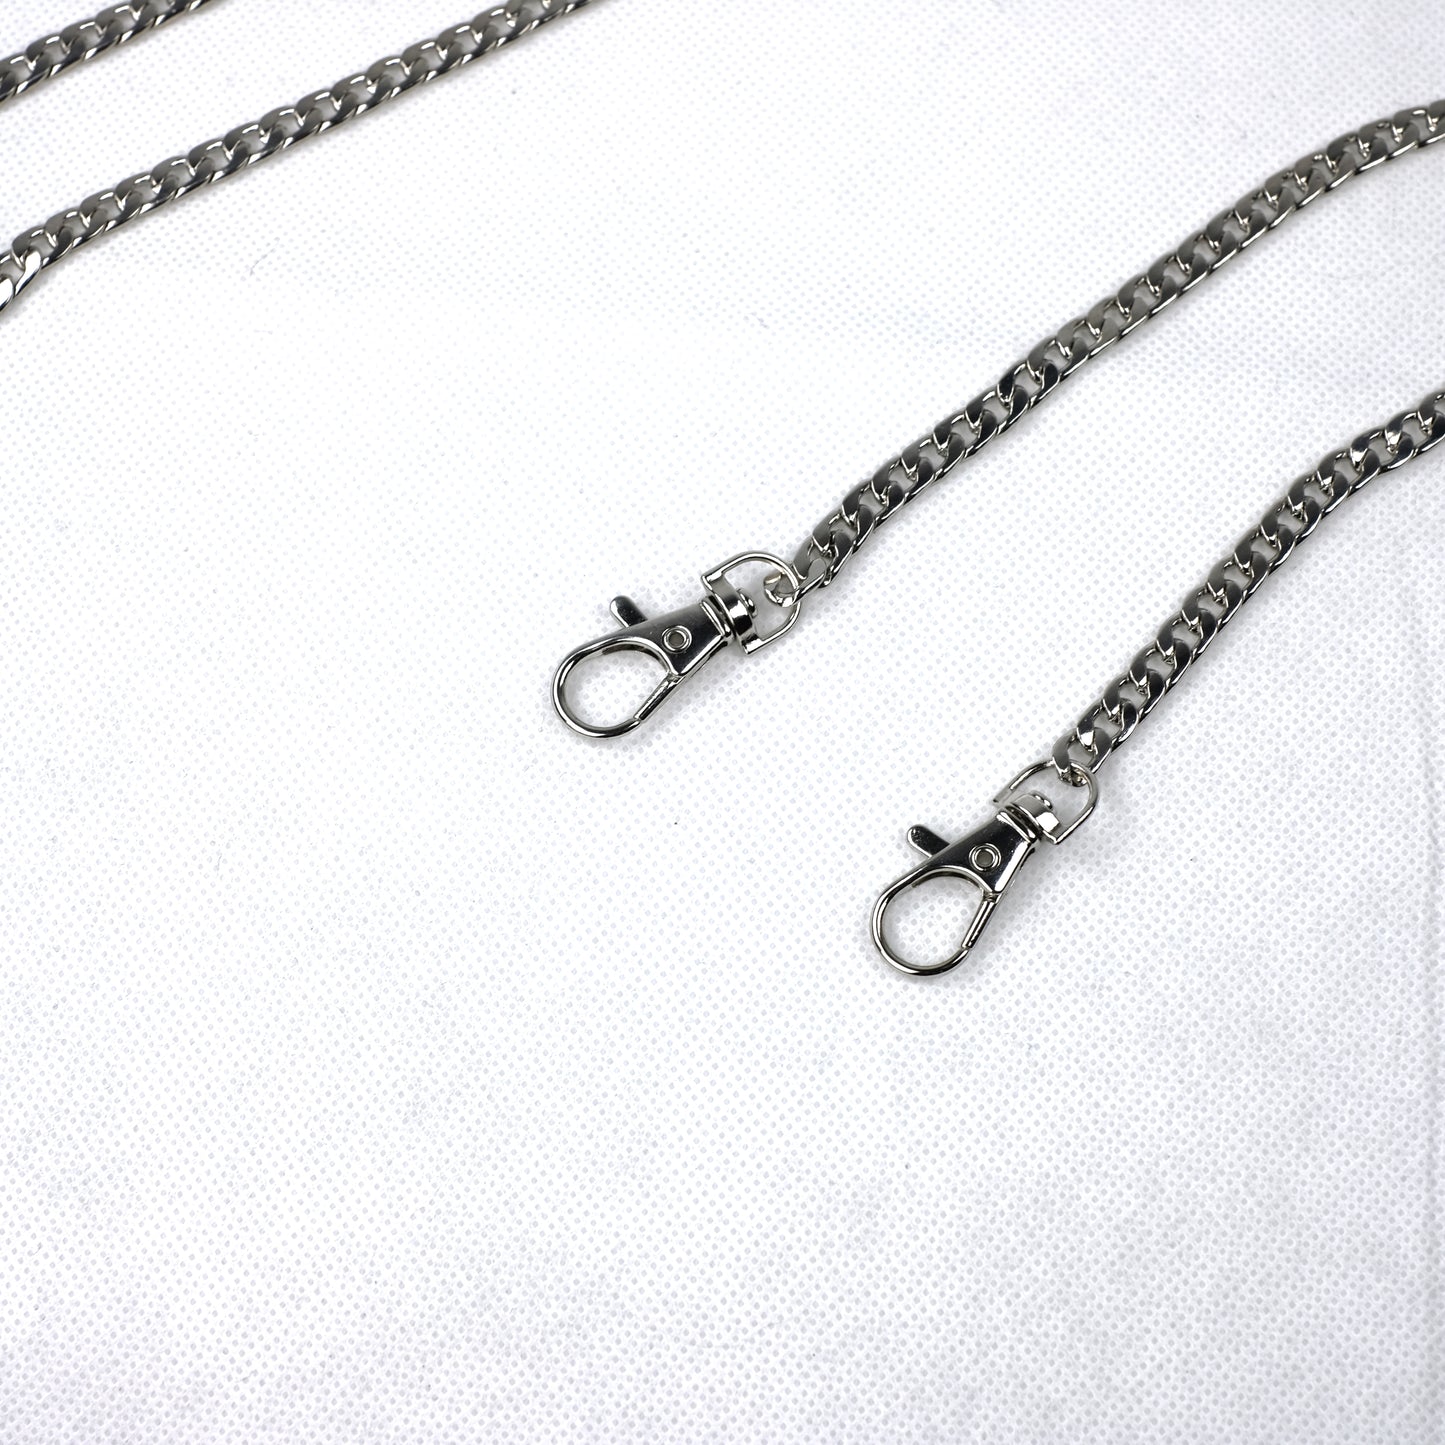 Gliederkette Silber mit Karabinerverschluss für Handtaschen / Taschenkette Taschenträger Taschenhenkel - Nickel